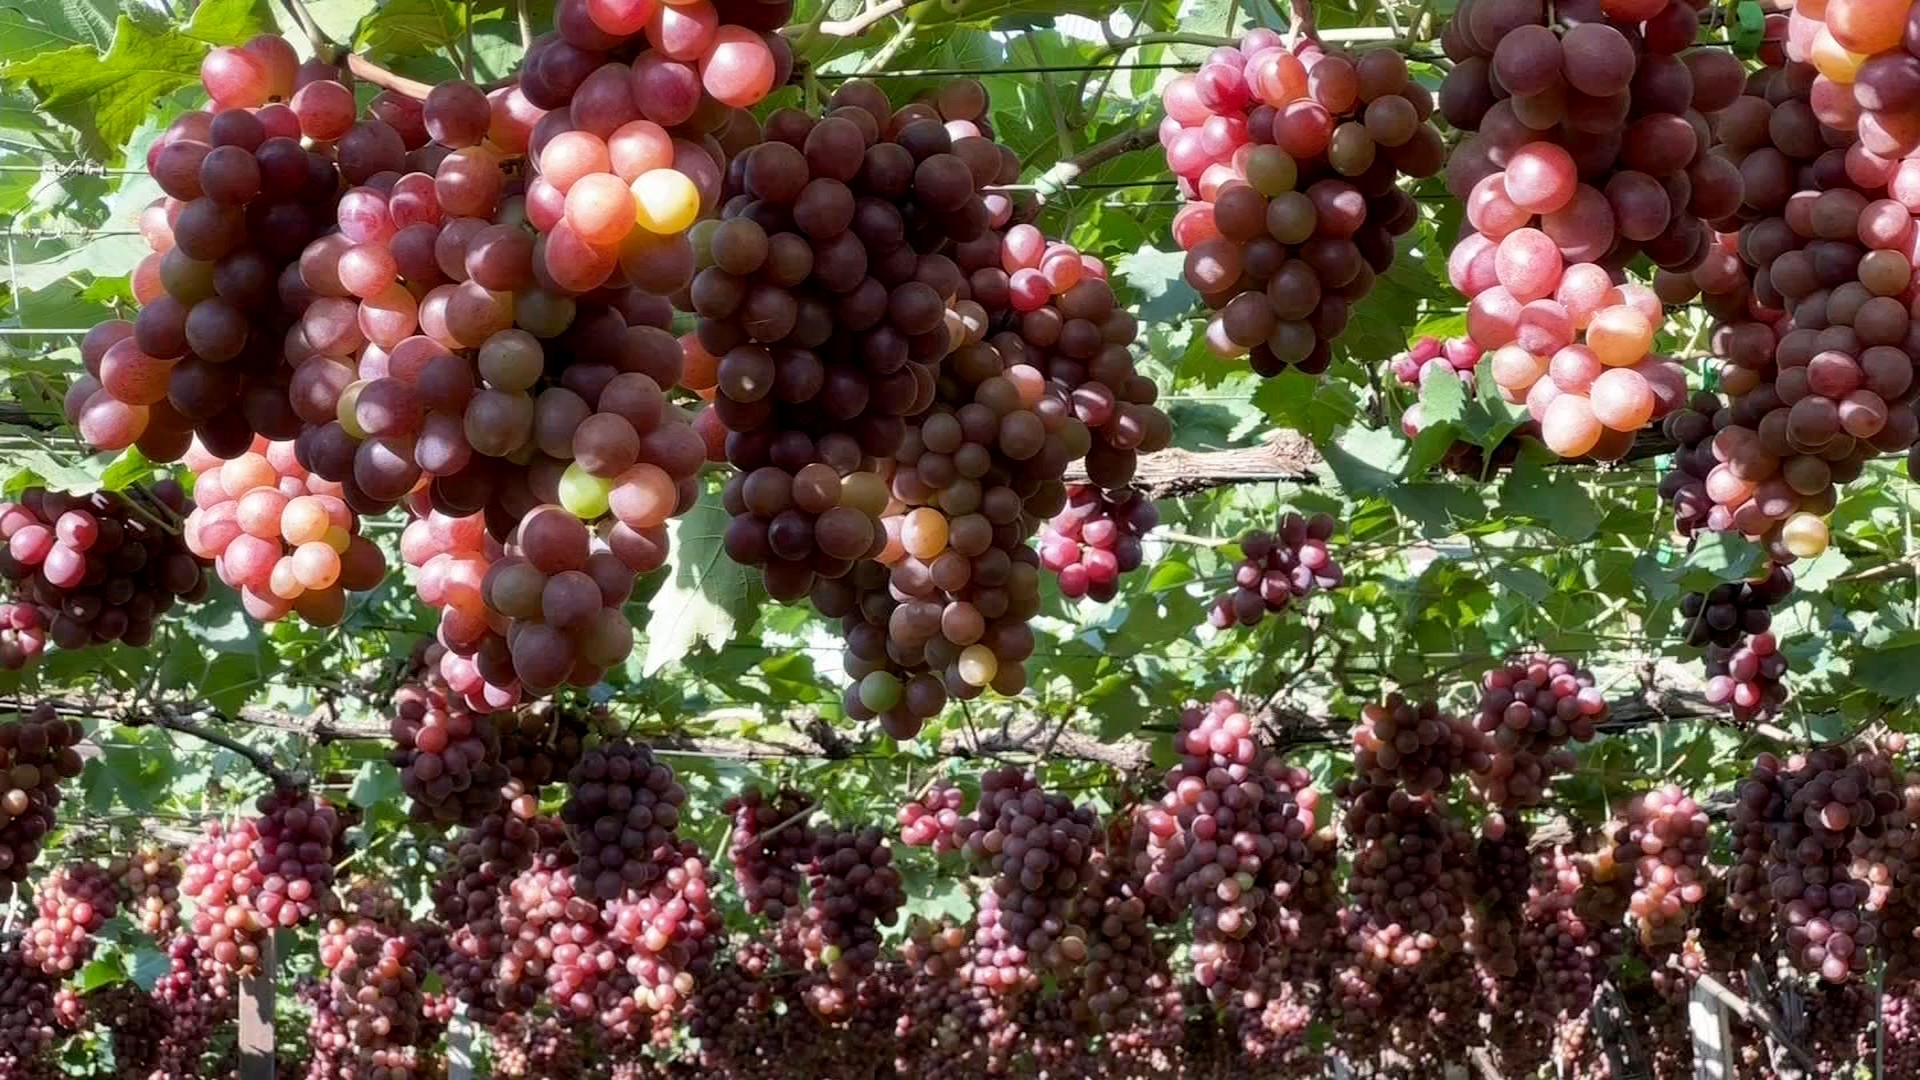 Agricultores se preocupam com redução de mais de 60% na produção de uva em Marialva